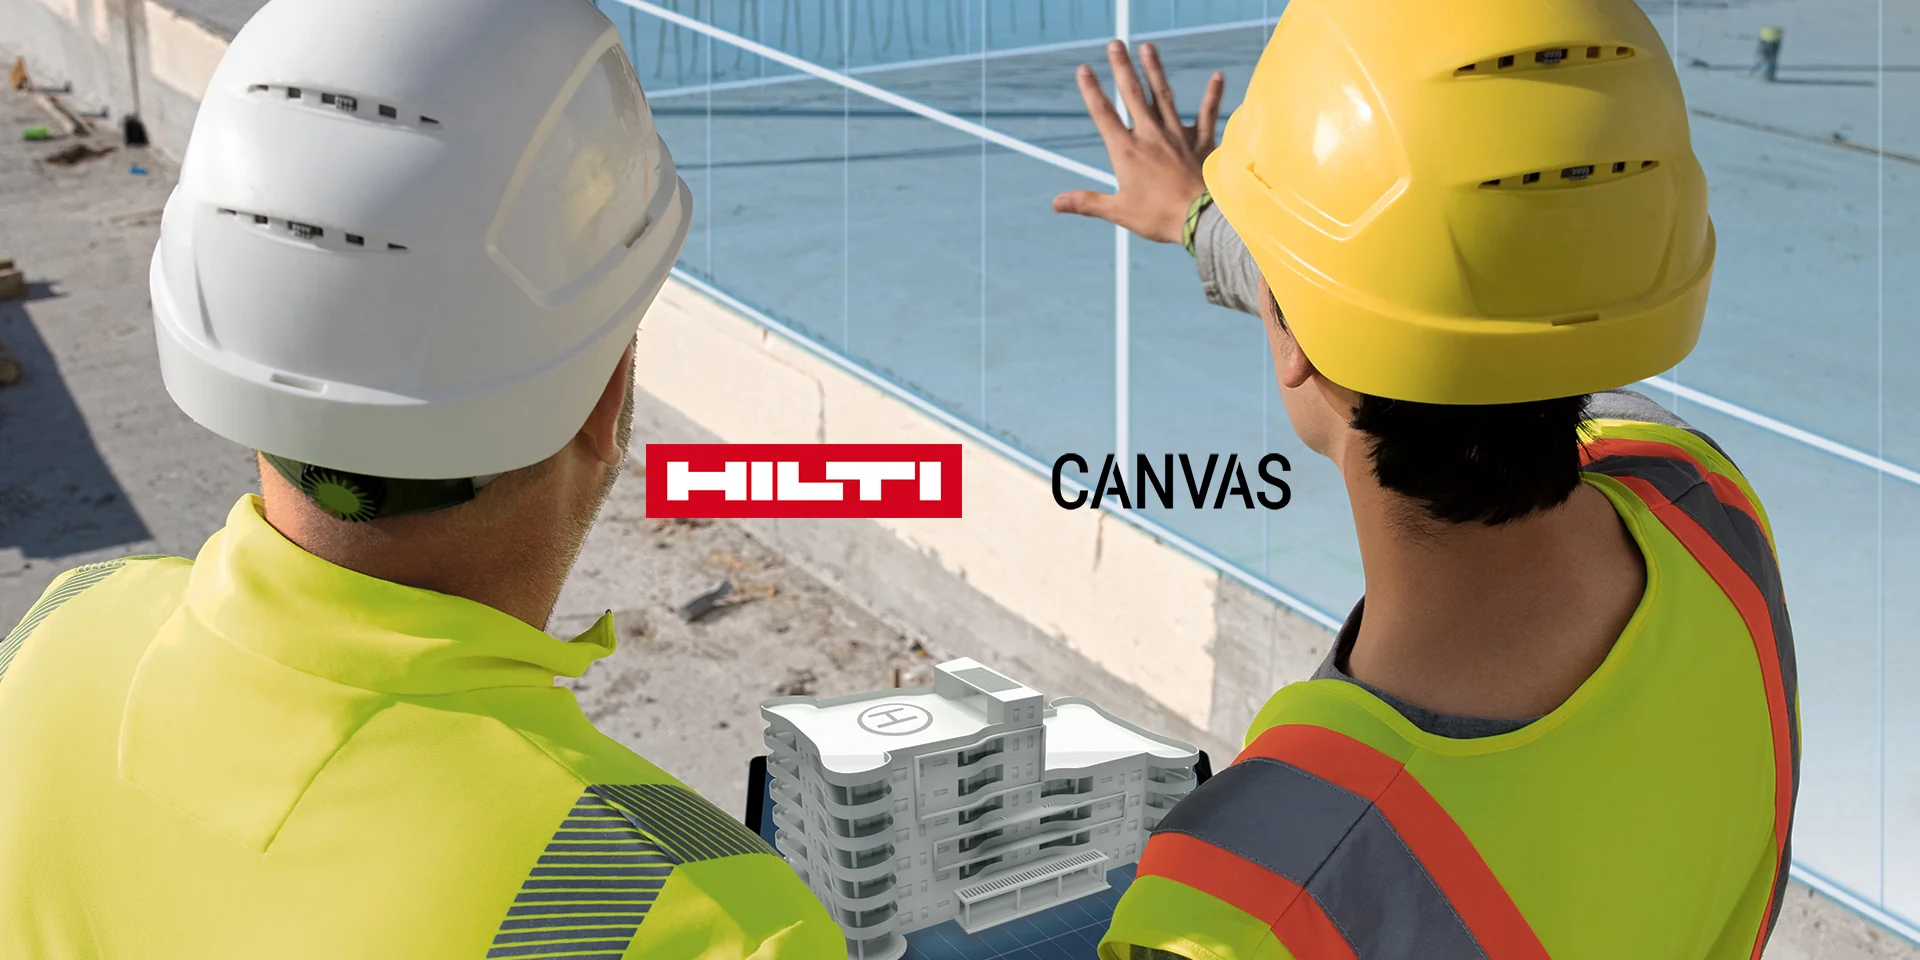 Hilti i Canvas, firma działająca w branży robotów dla budownictwa, ogłaszają nawiązanie strategicznej współpracy partnerskiej